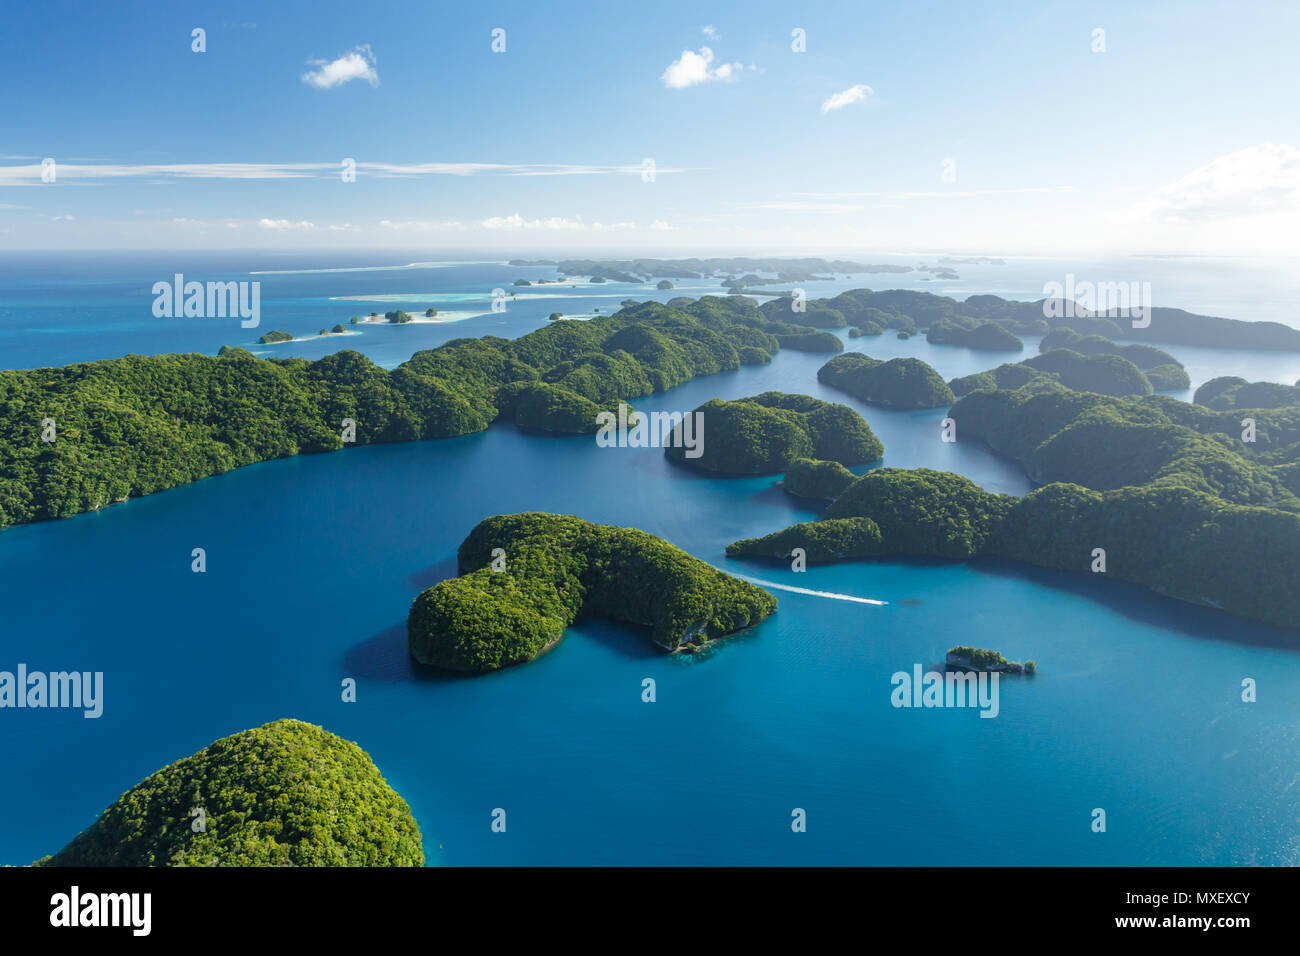 Luftaufnahme von Boot in Korallenriffen reisen, Korallenatolle und zwei kleinen Inseln umgeben vom türkisblauen Wasser des Südpazifik Stockfoto